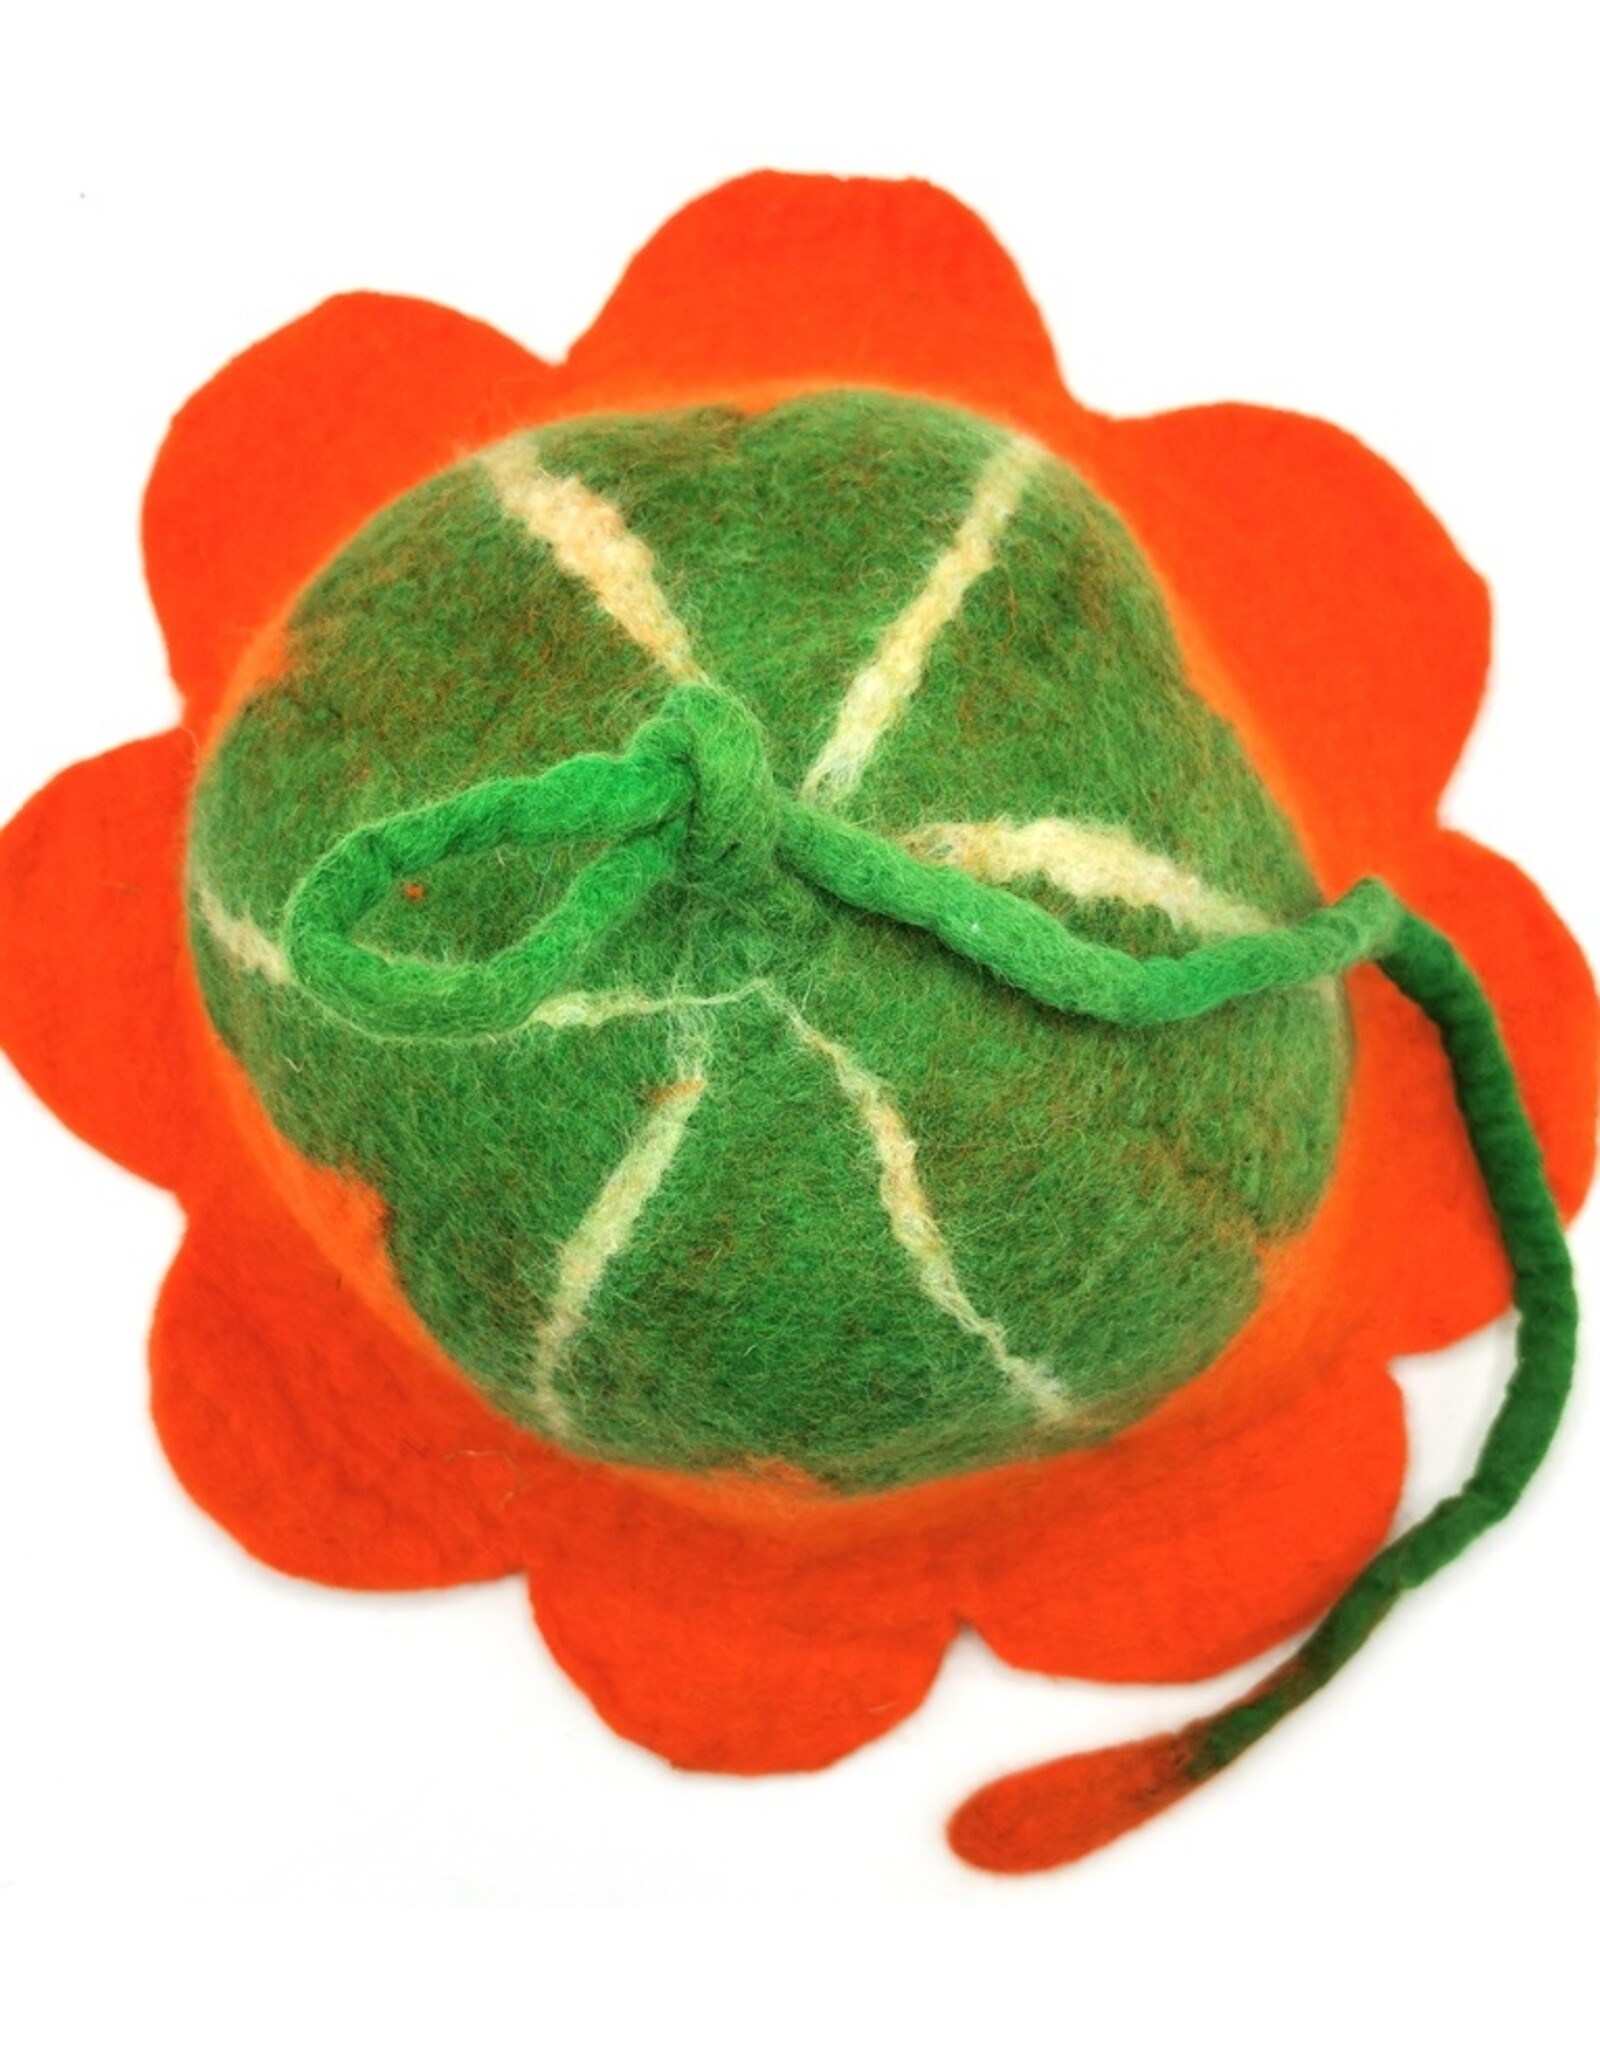 Trukado Miscellaneous - Felt hat Flower Orange Flower